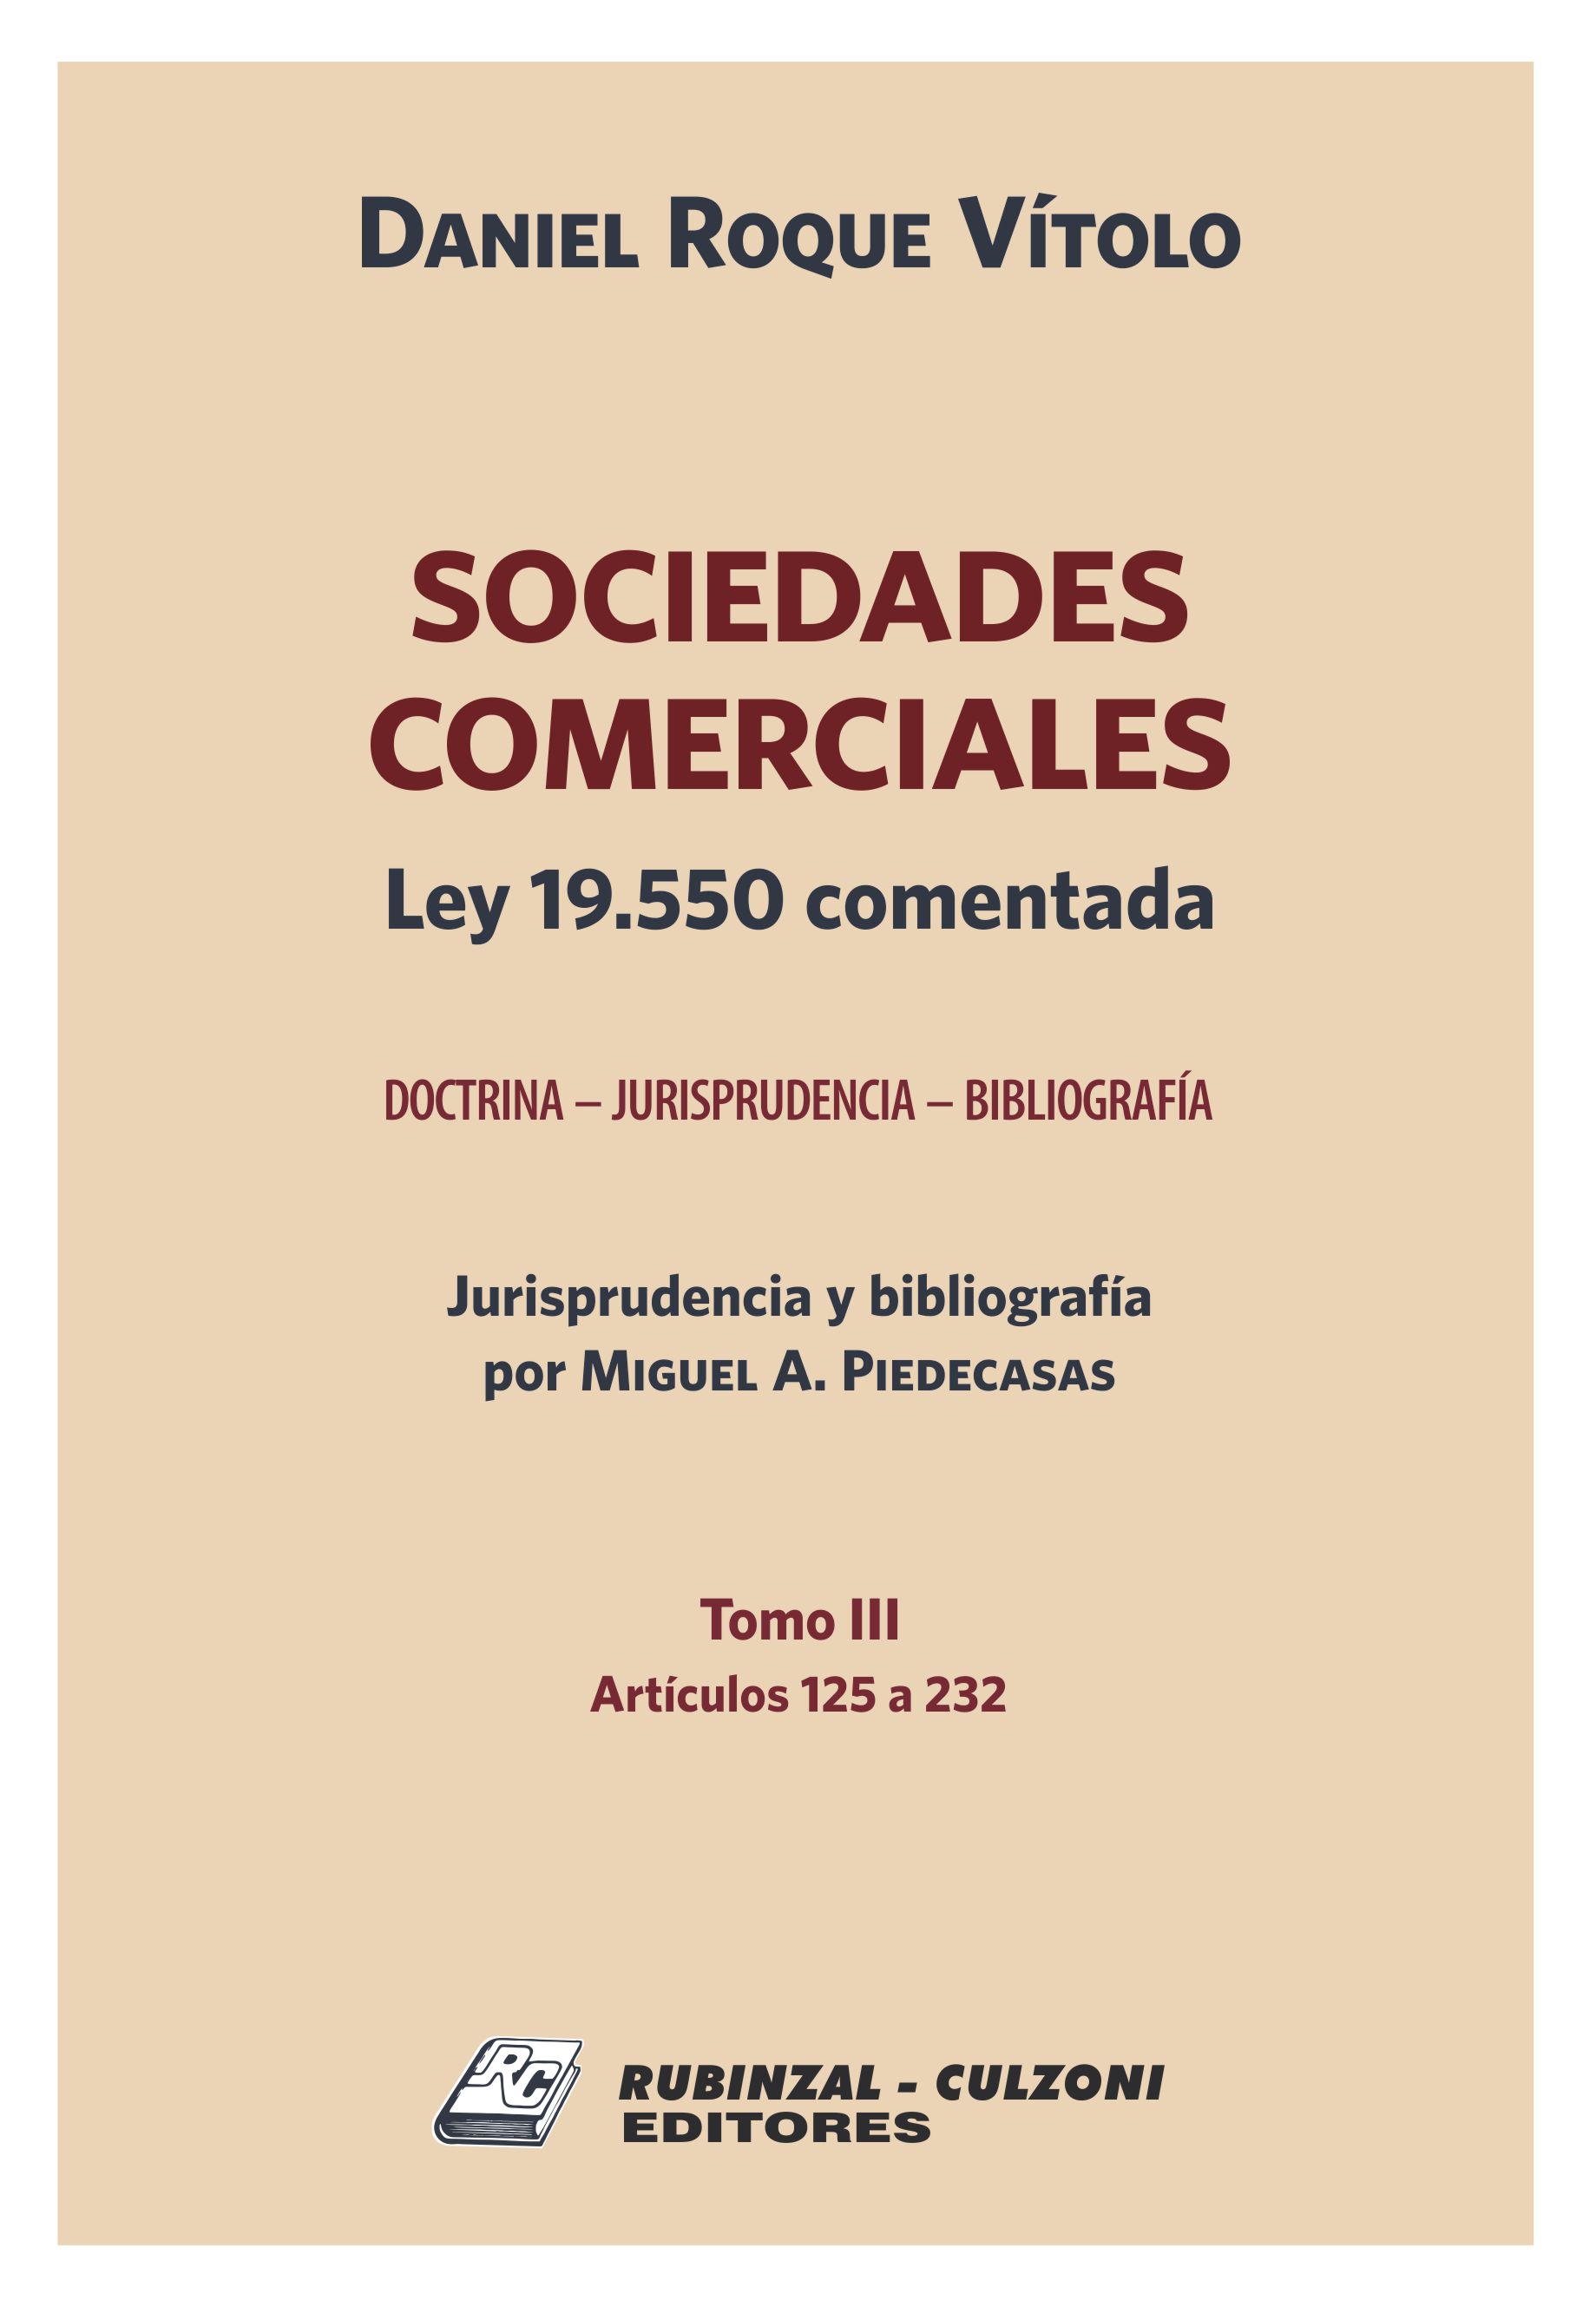 Sociedades Comerciales. Ley 19.550 comentada (Doctrina - Jurisprudencia - Bibliografía). - Tomo III (Artículos 125 a 232).